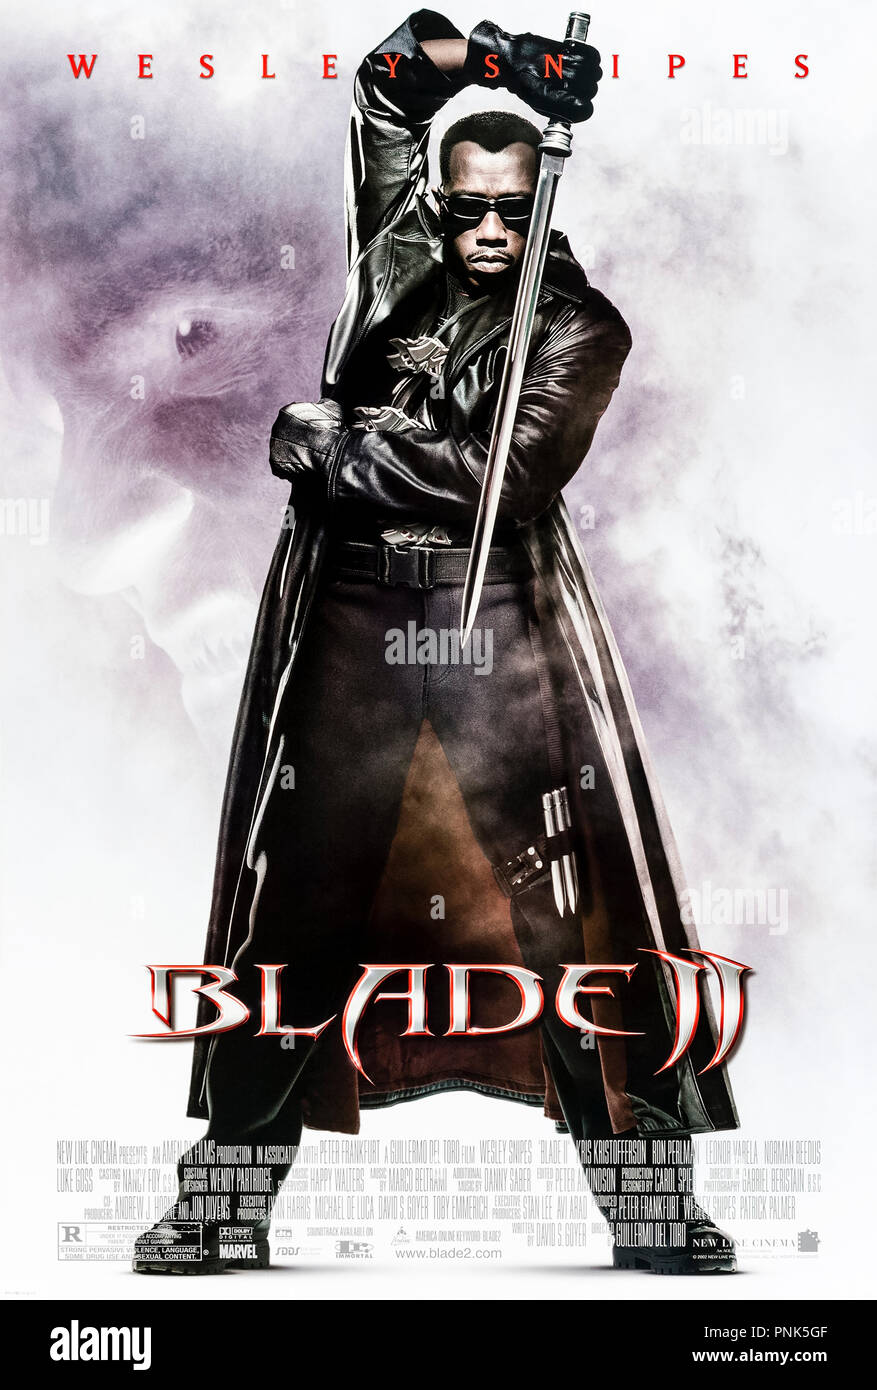 Blade II (2002) von Guillermo del Toro Regie und mit Wesley Snipes, Kris Kristofferson, Ron Perlman, Leonor Varela. Blade unterstützt die Vampire elite Bloodpack in die Jagd nach mutierte Vampire, die auf Vampire feed sowie Menschen. Stockfoto